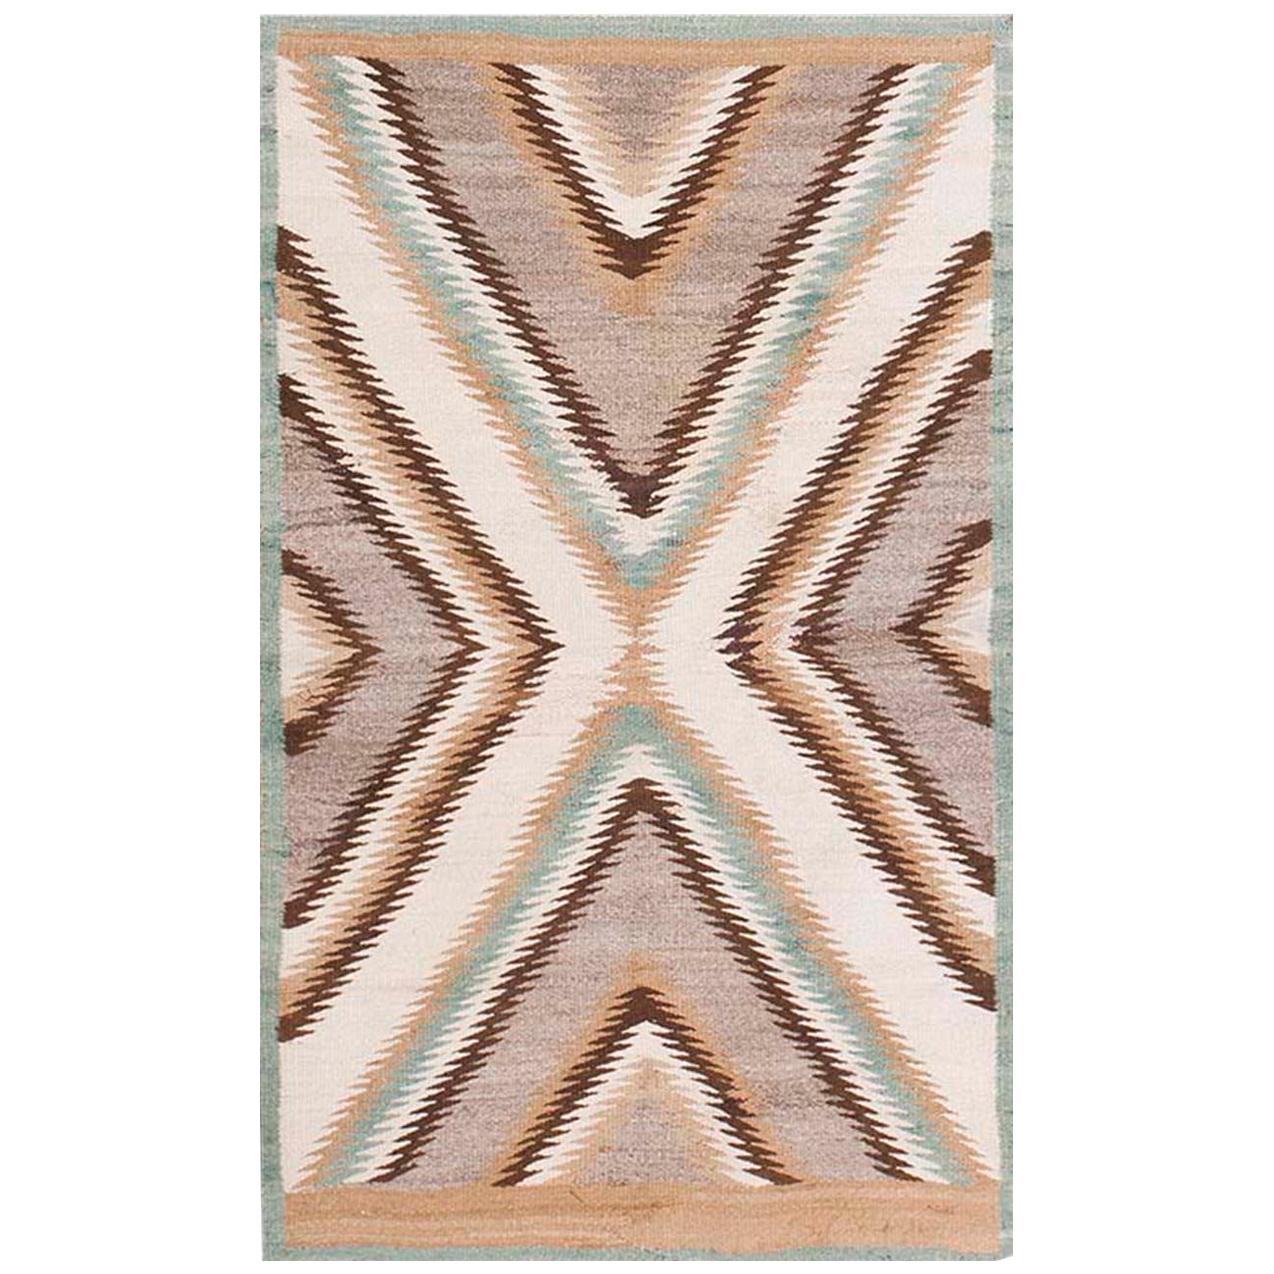 1920s American Navajo Carpet ( 2'9" x 4'4" - 83 x 132 cm ) For Sale